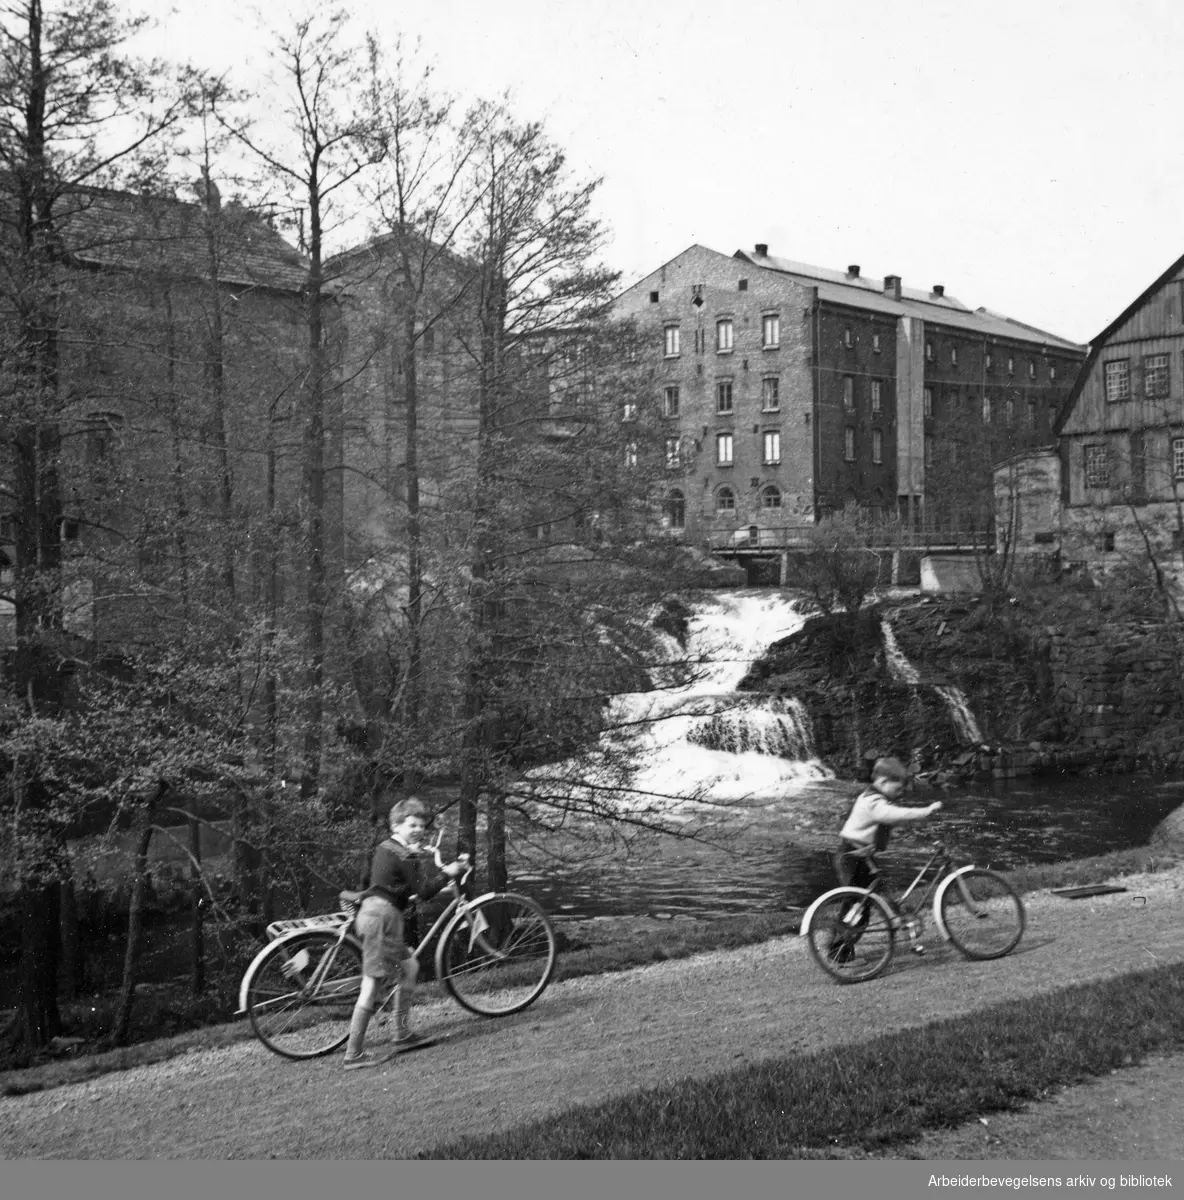 "Hjula - fabrikk med tradisjoner." Fossen ved Glads mølle. Hjulafossen. Billedreportasje fra Hjula Væverier i Magasinet for Alle, september 1954.